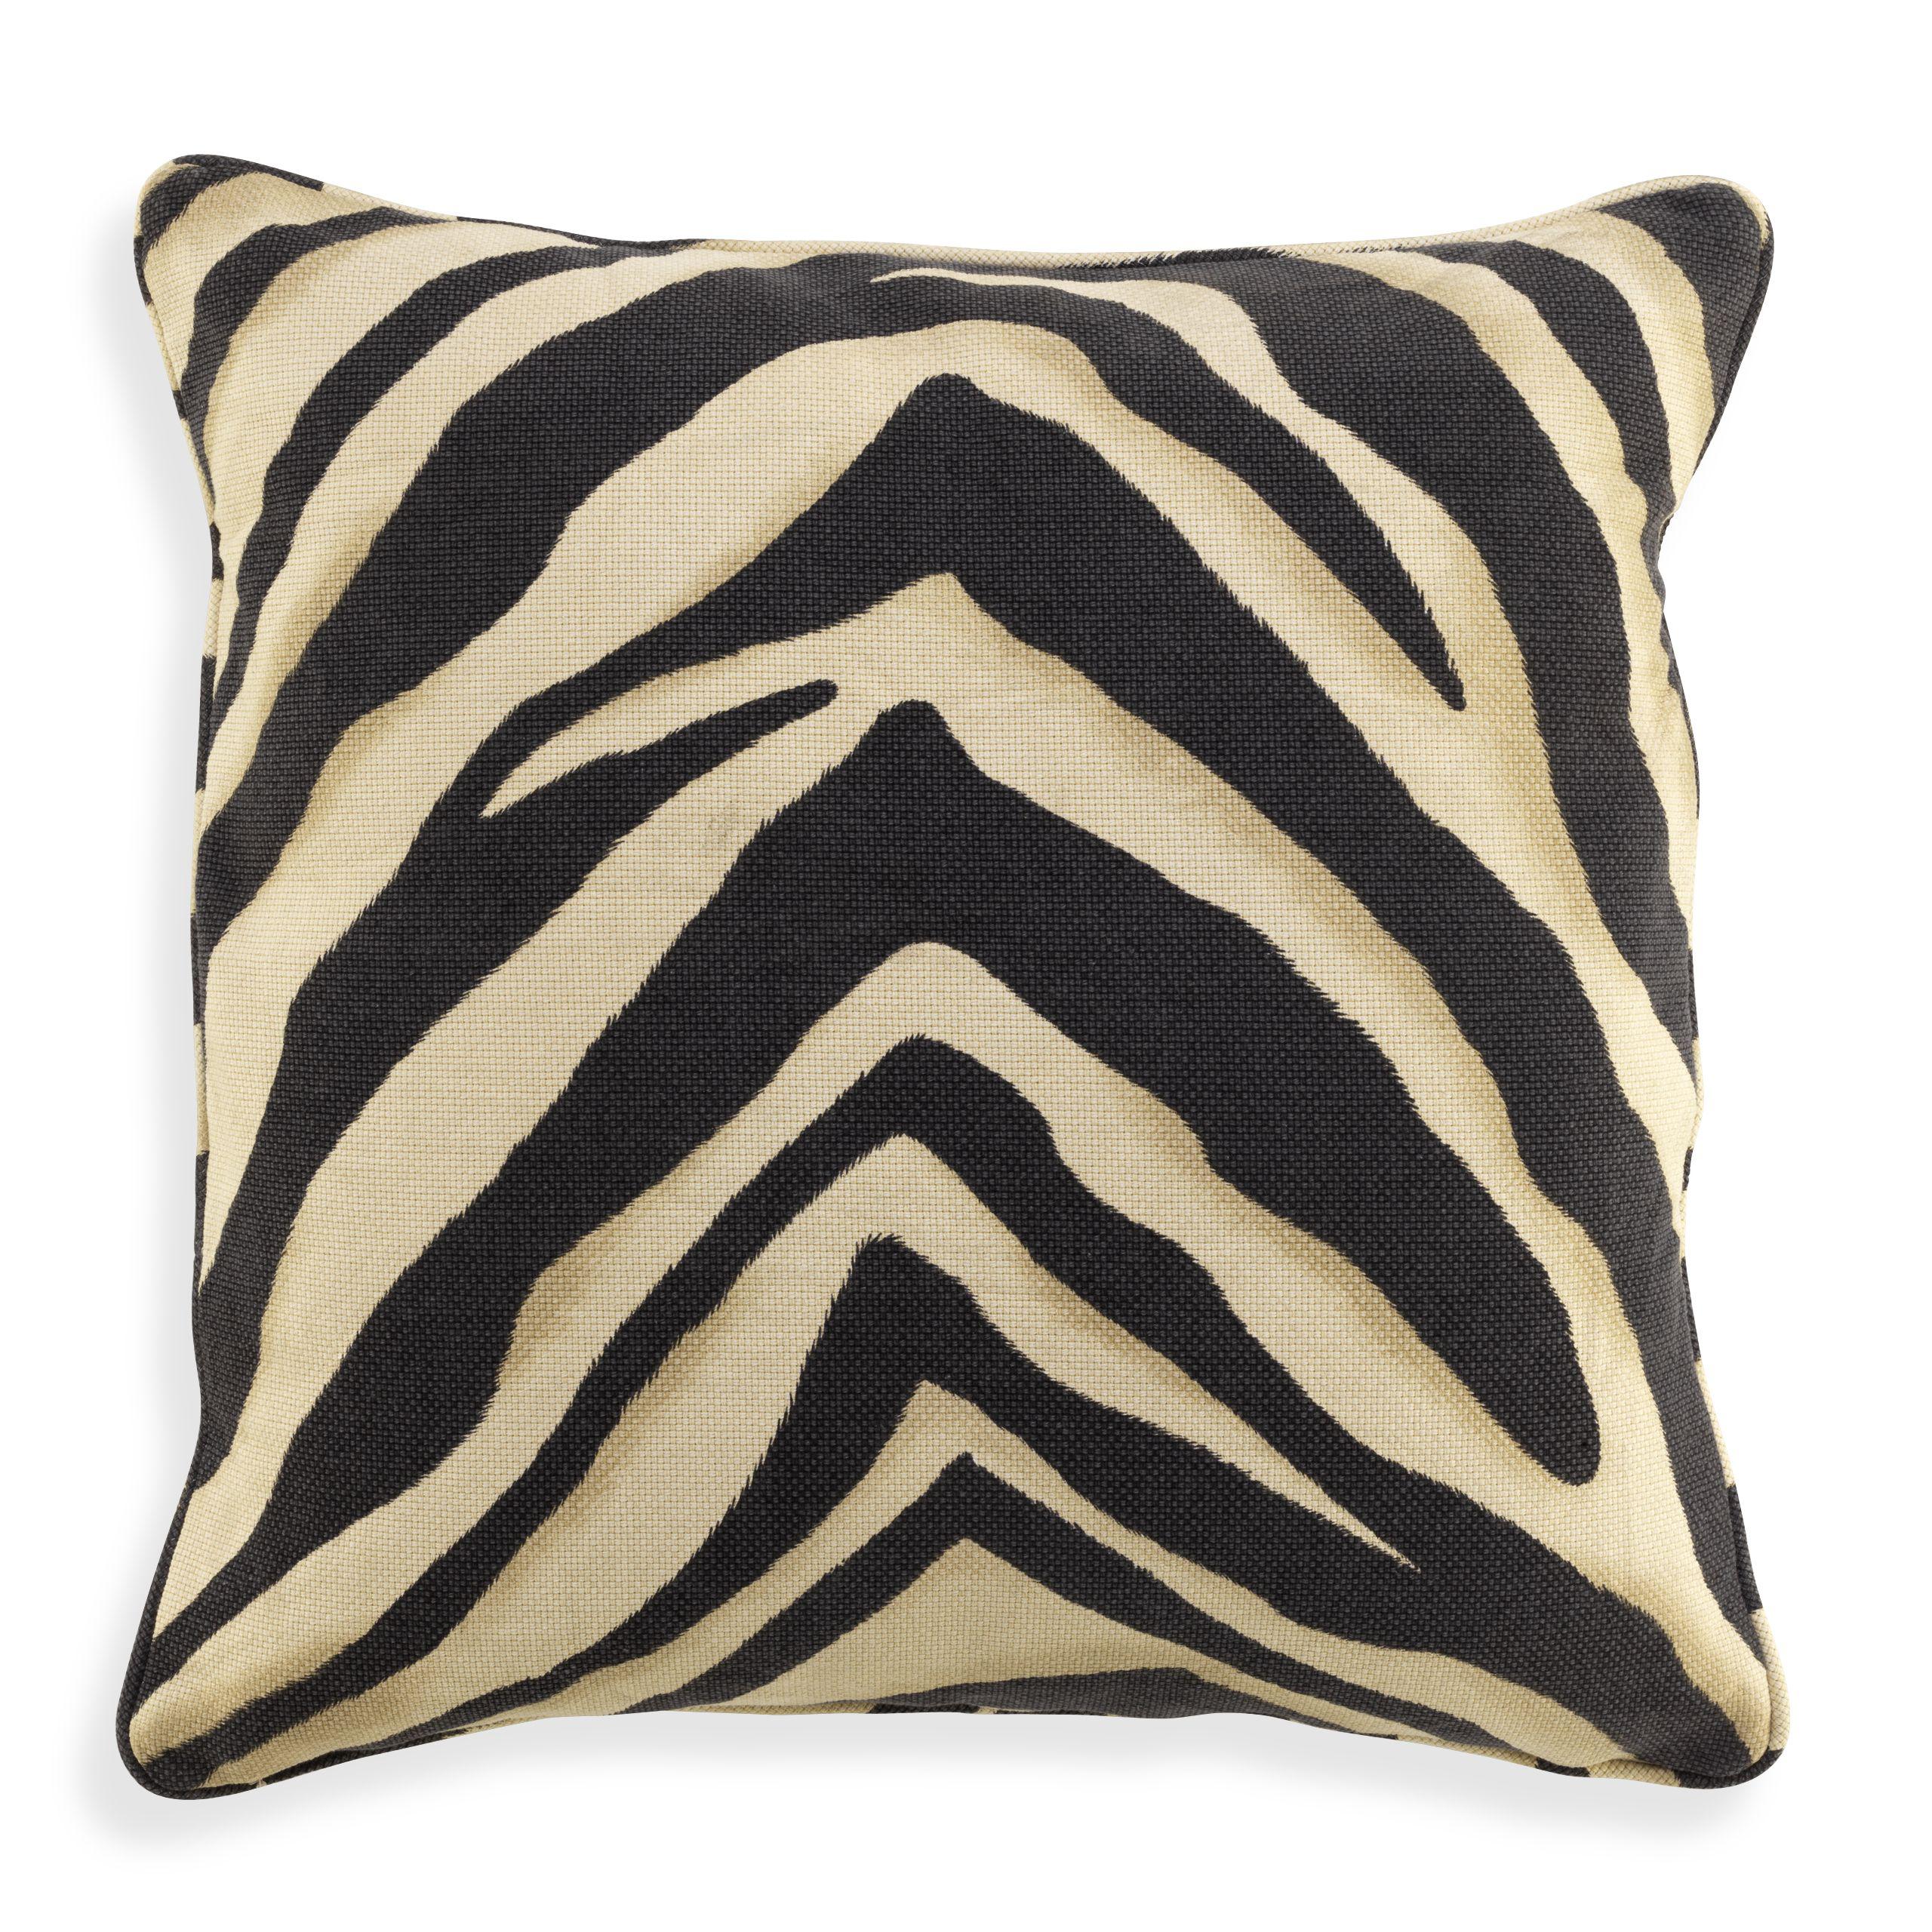 Купить Декоративная подушка Cushion Zebra в интернет-магазине roooms.ru